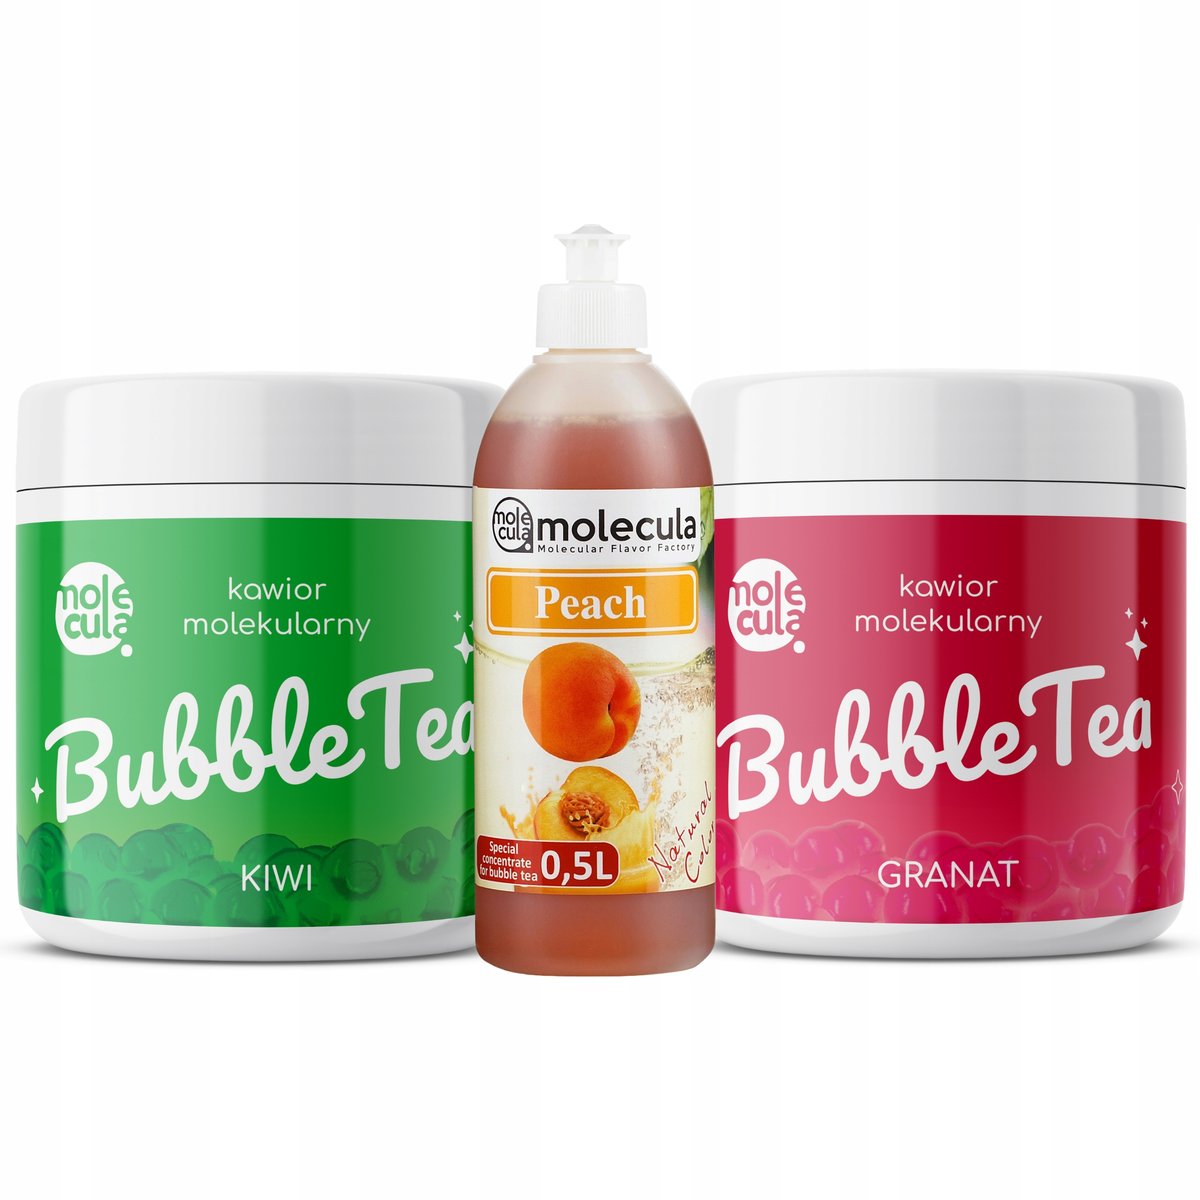 Zestaw Bubble Tea - Kiwi I Granat, Syrop Brzoskwinia, Kubki I Słomki